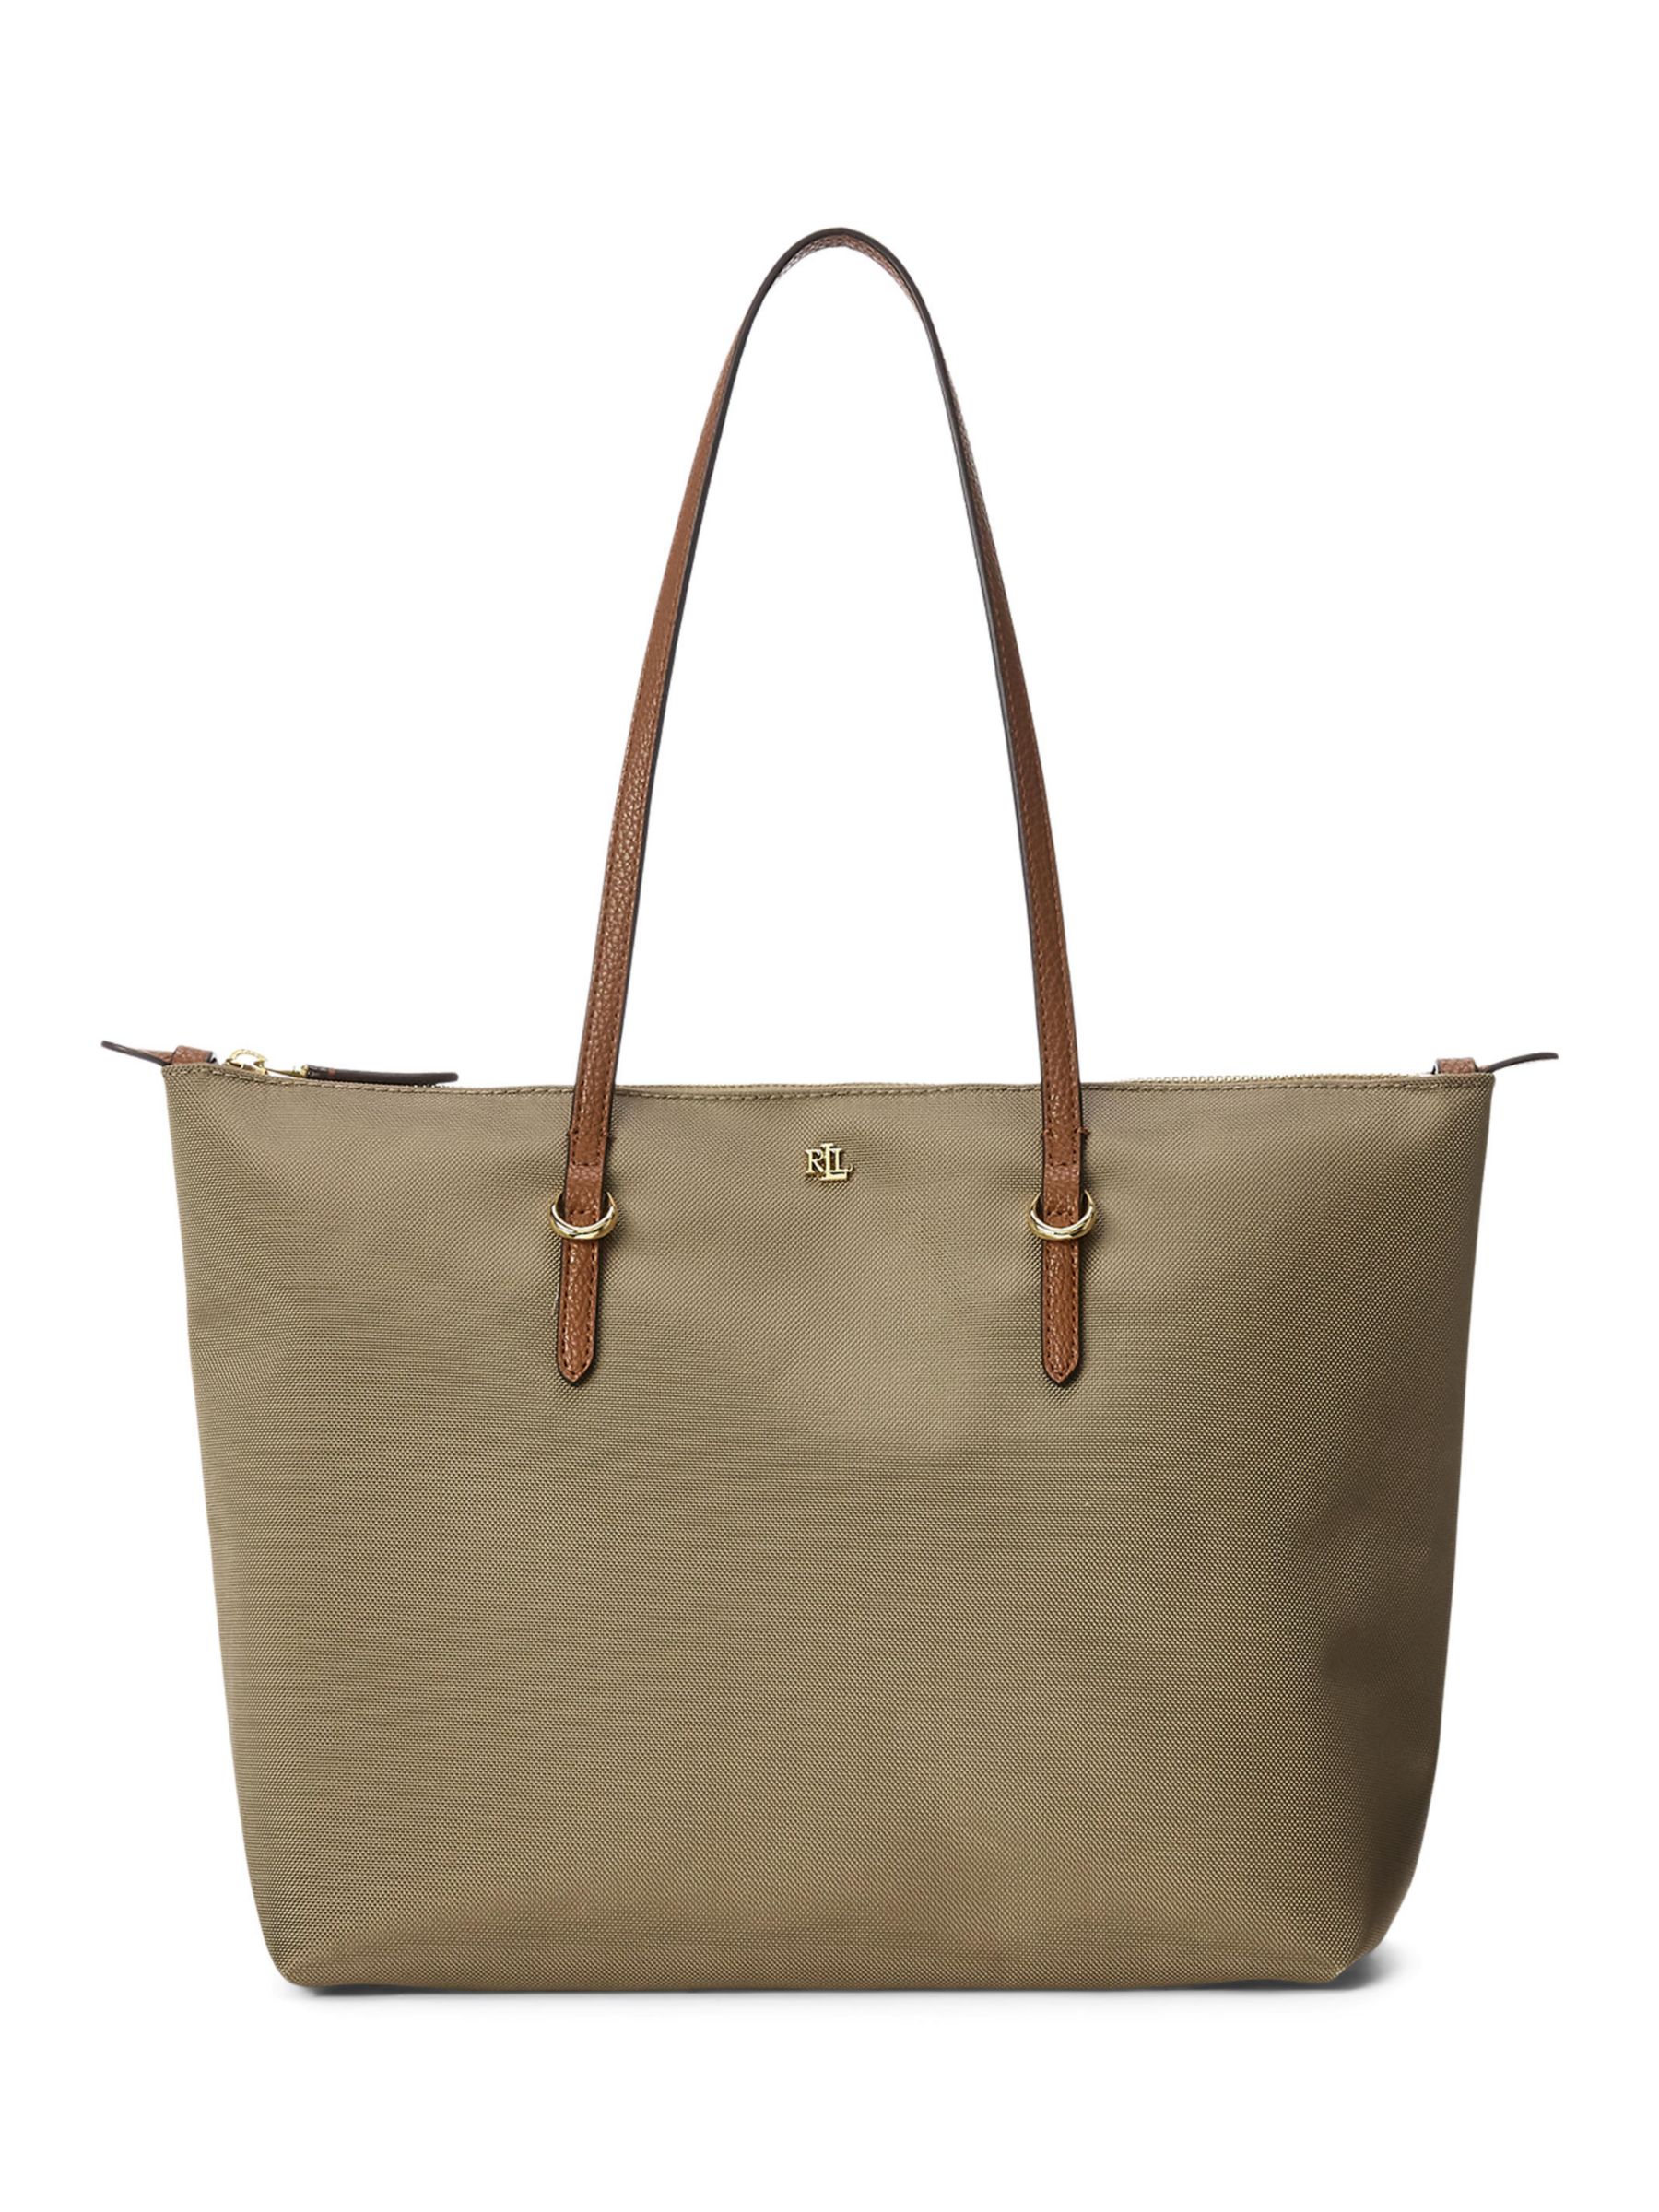 Women's Ralph Lauren Handbags, Bags & Purses